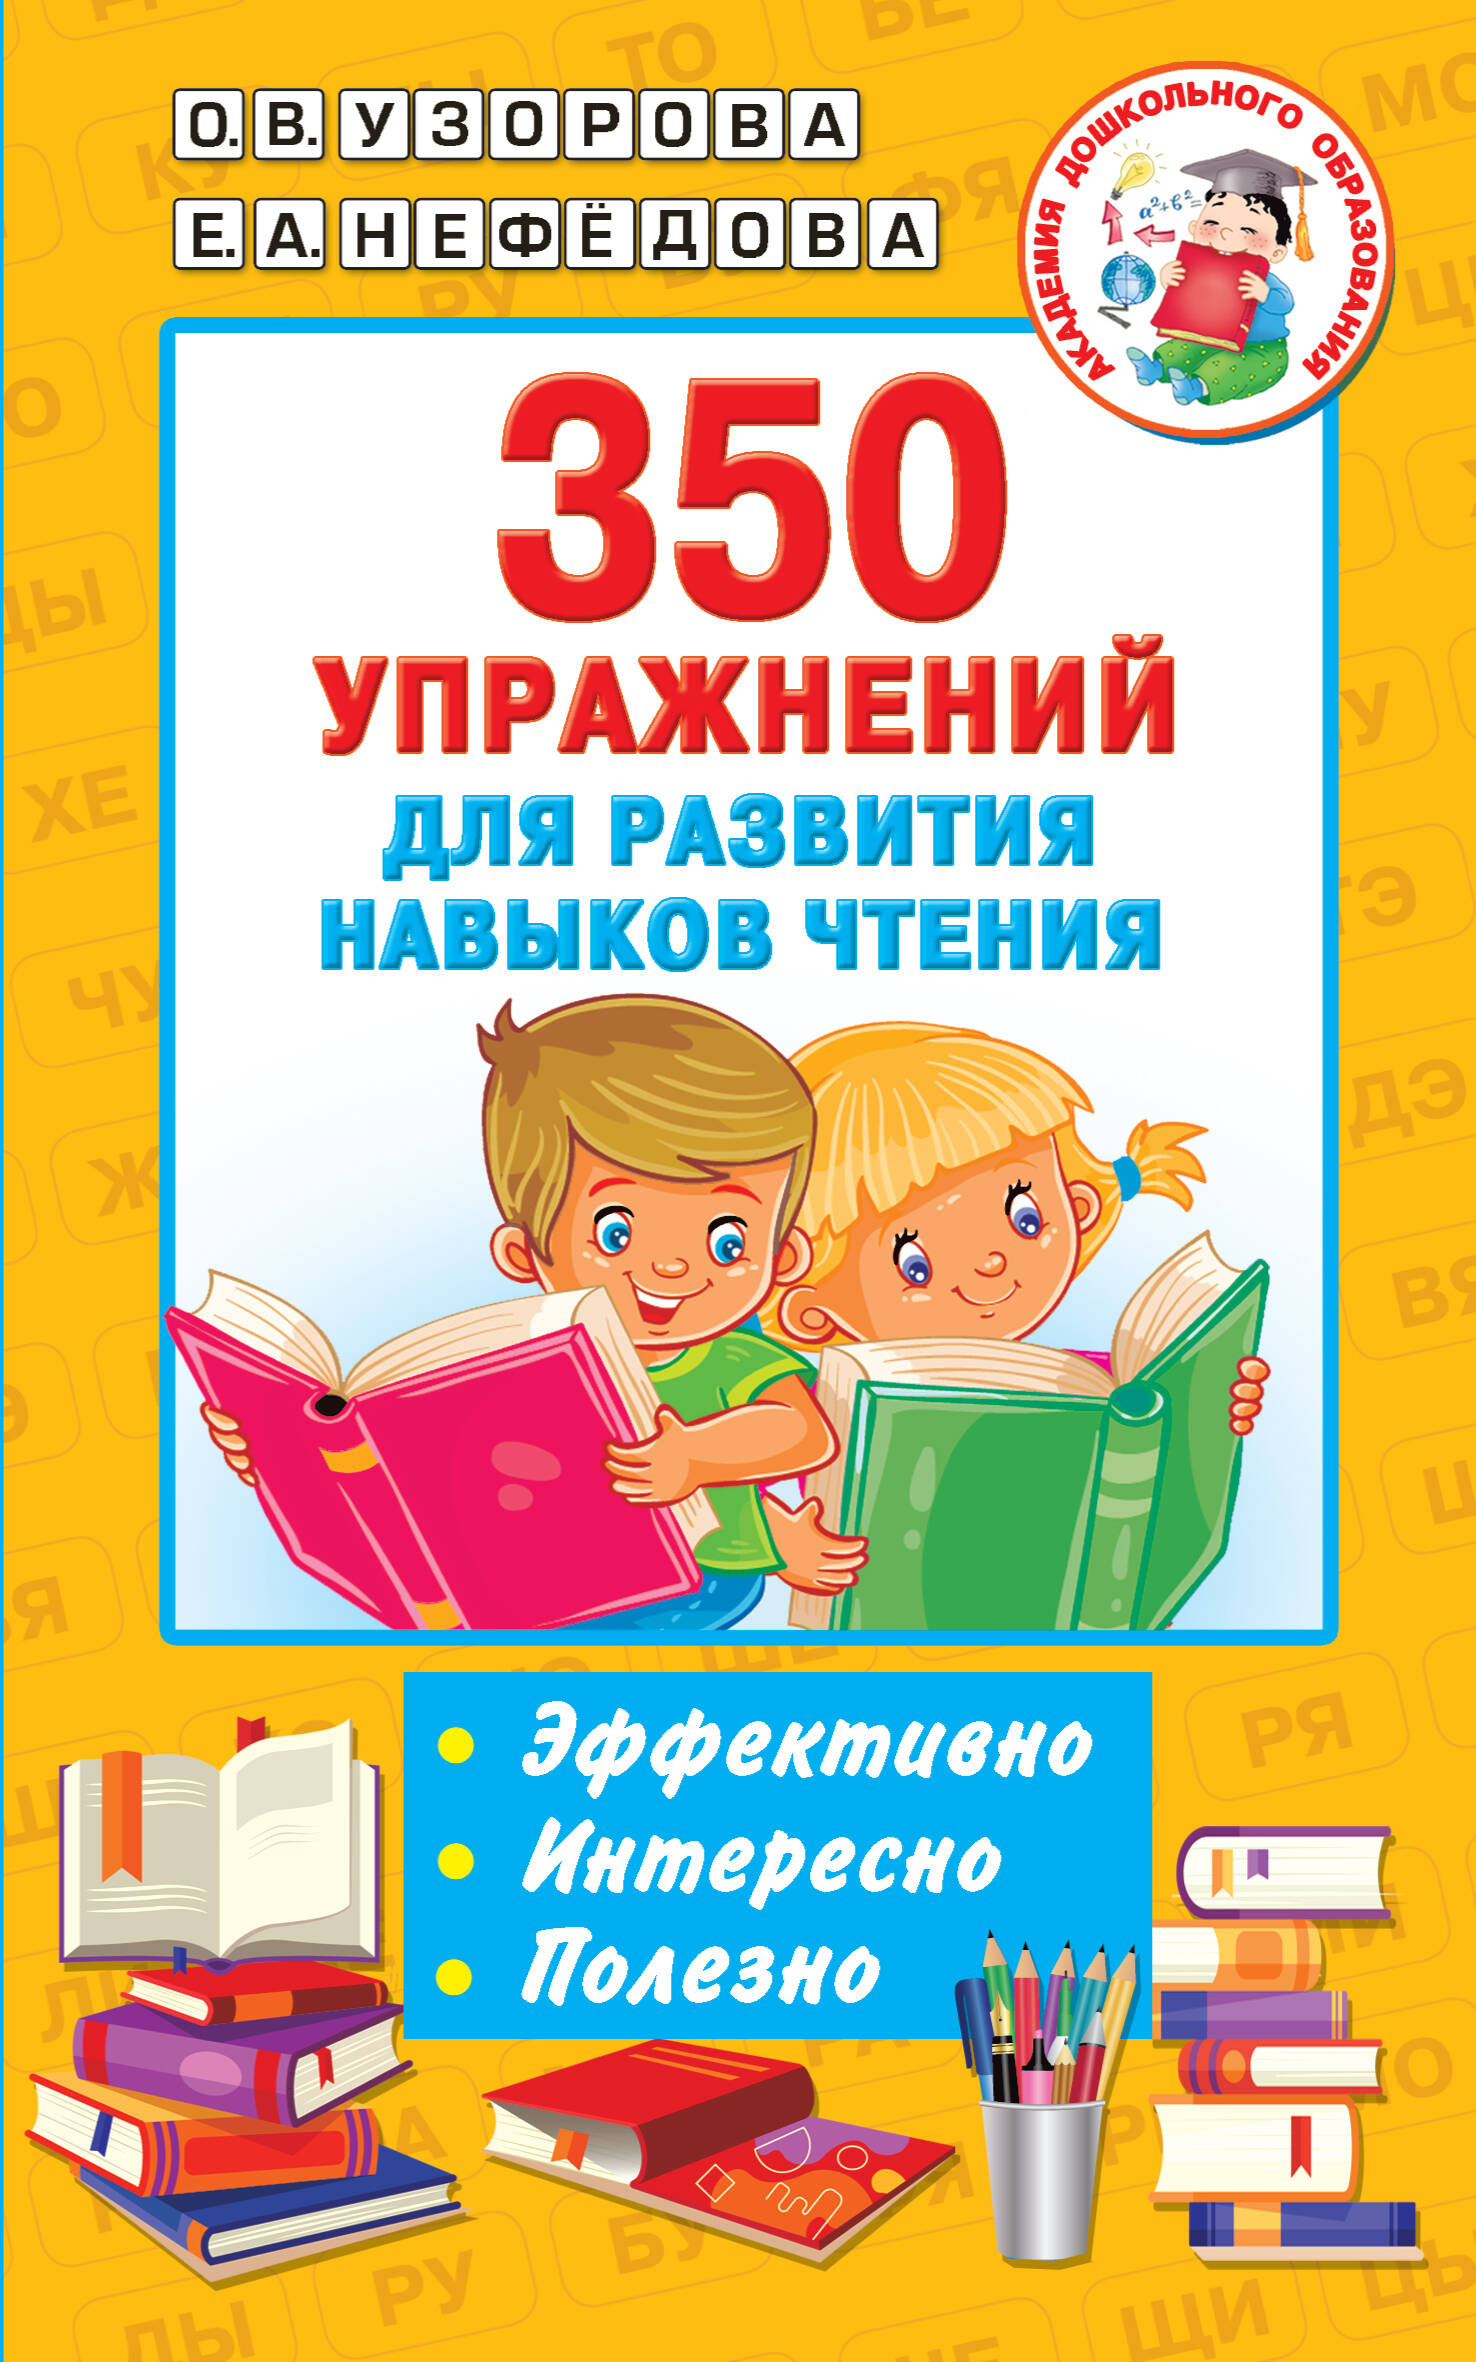 жукова о логотренажер для развития навыков чтения 350 упражнений для развития навыков чтения